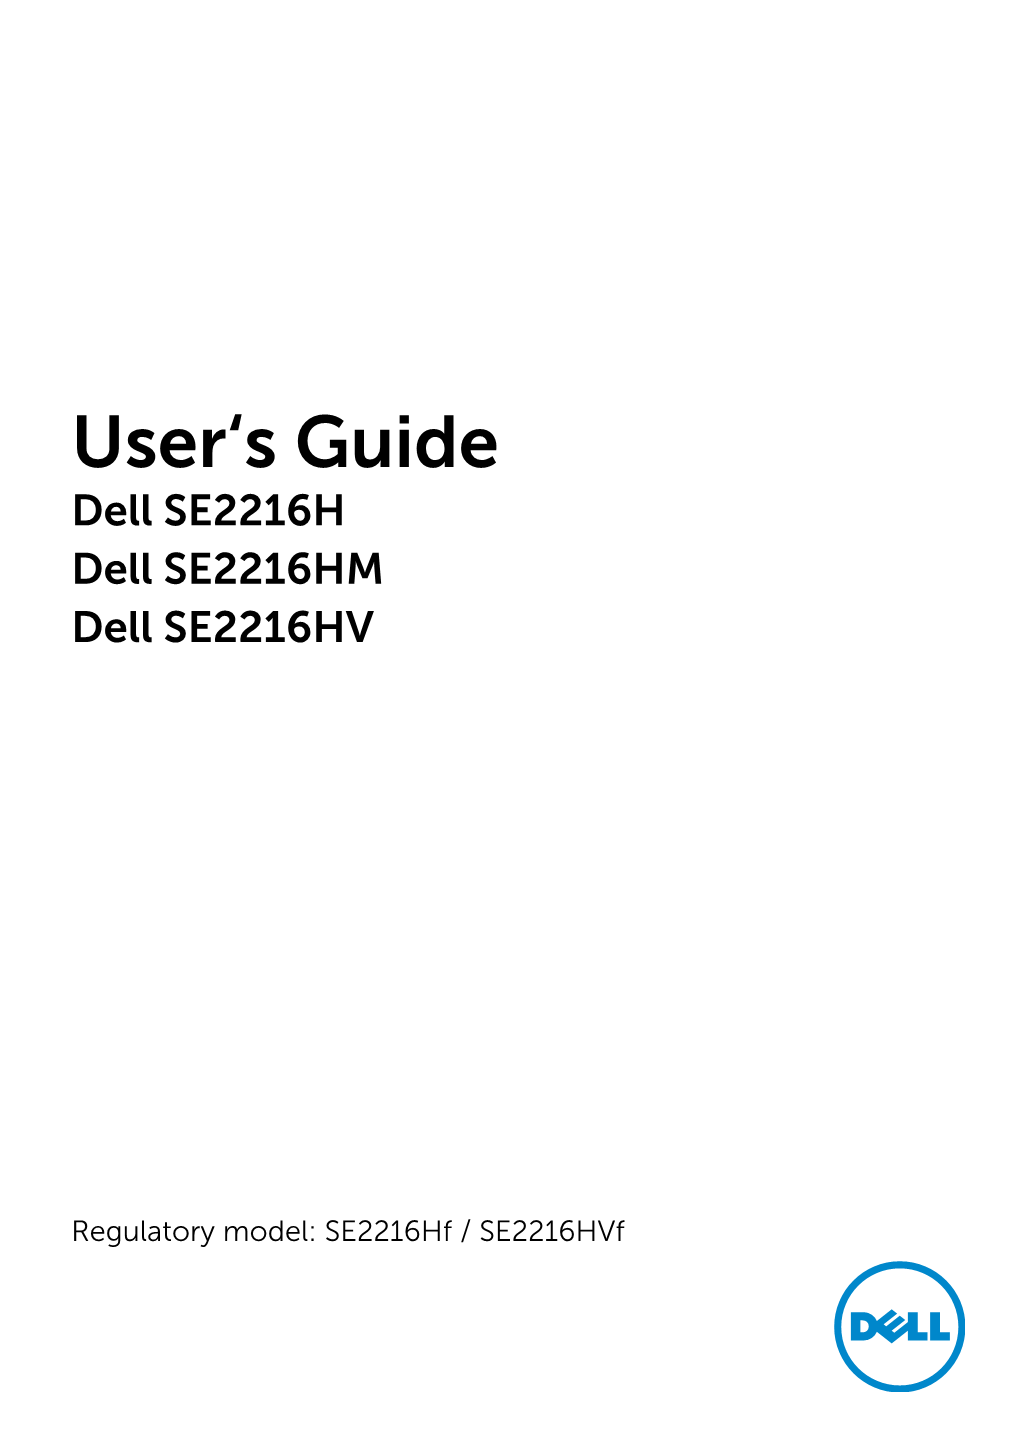 Dell SE2216H User's Guide